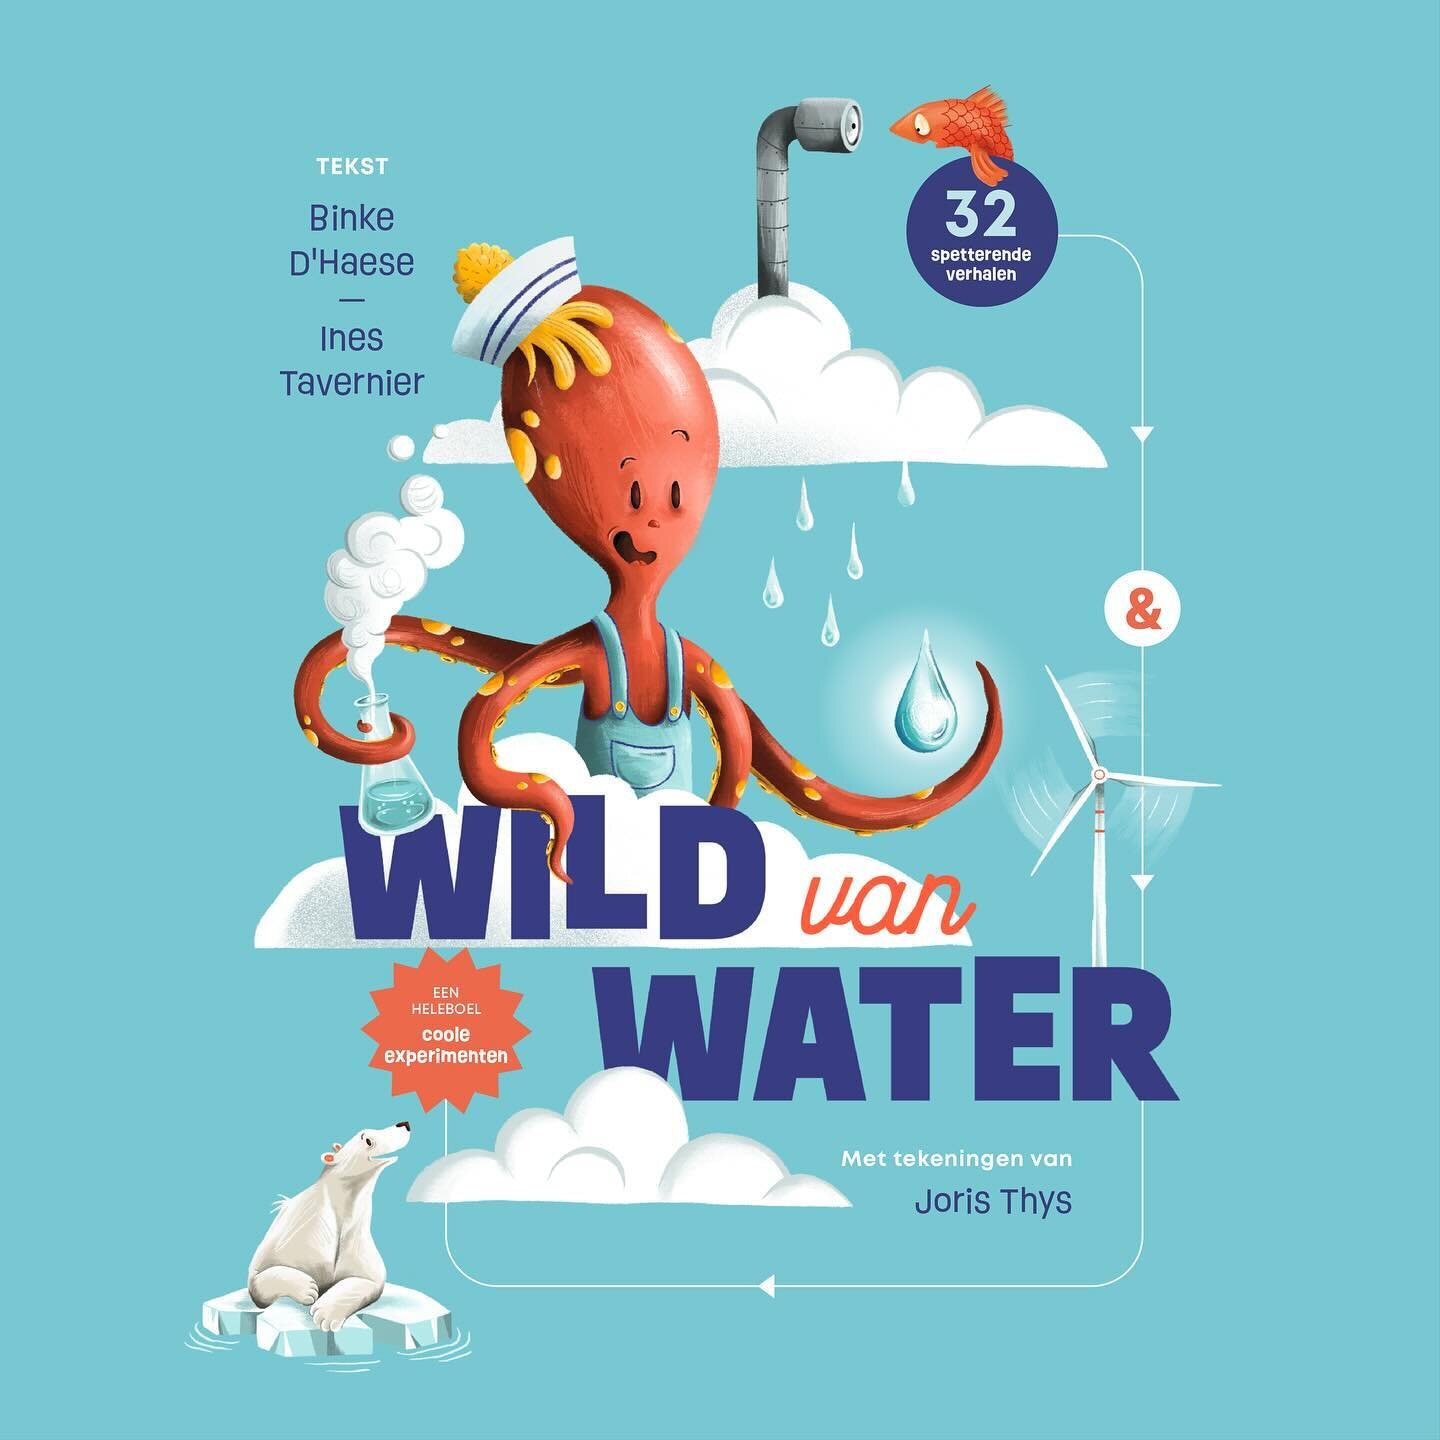 Vorige week ging &ldquo;Wild van Water&rdquo; in druk. Een boek van @mythrasbooks in samenwerking met @vlizostend tjokvol verhalen, weetjes en proeven over water! Binnenkort in de winkel.

Ik deed de vormgeving, Lay-out en alle illustraties.

#water 